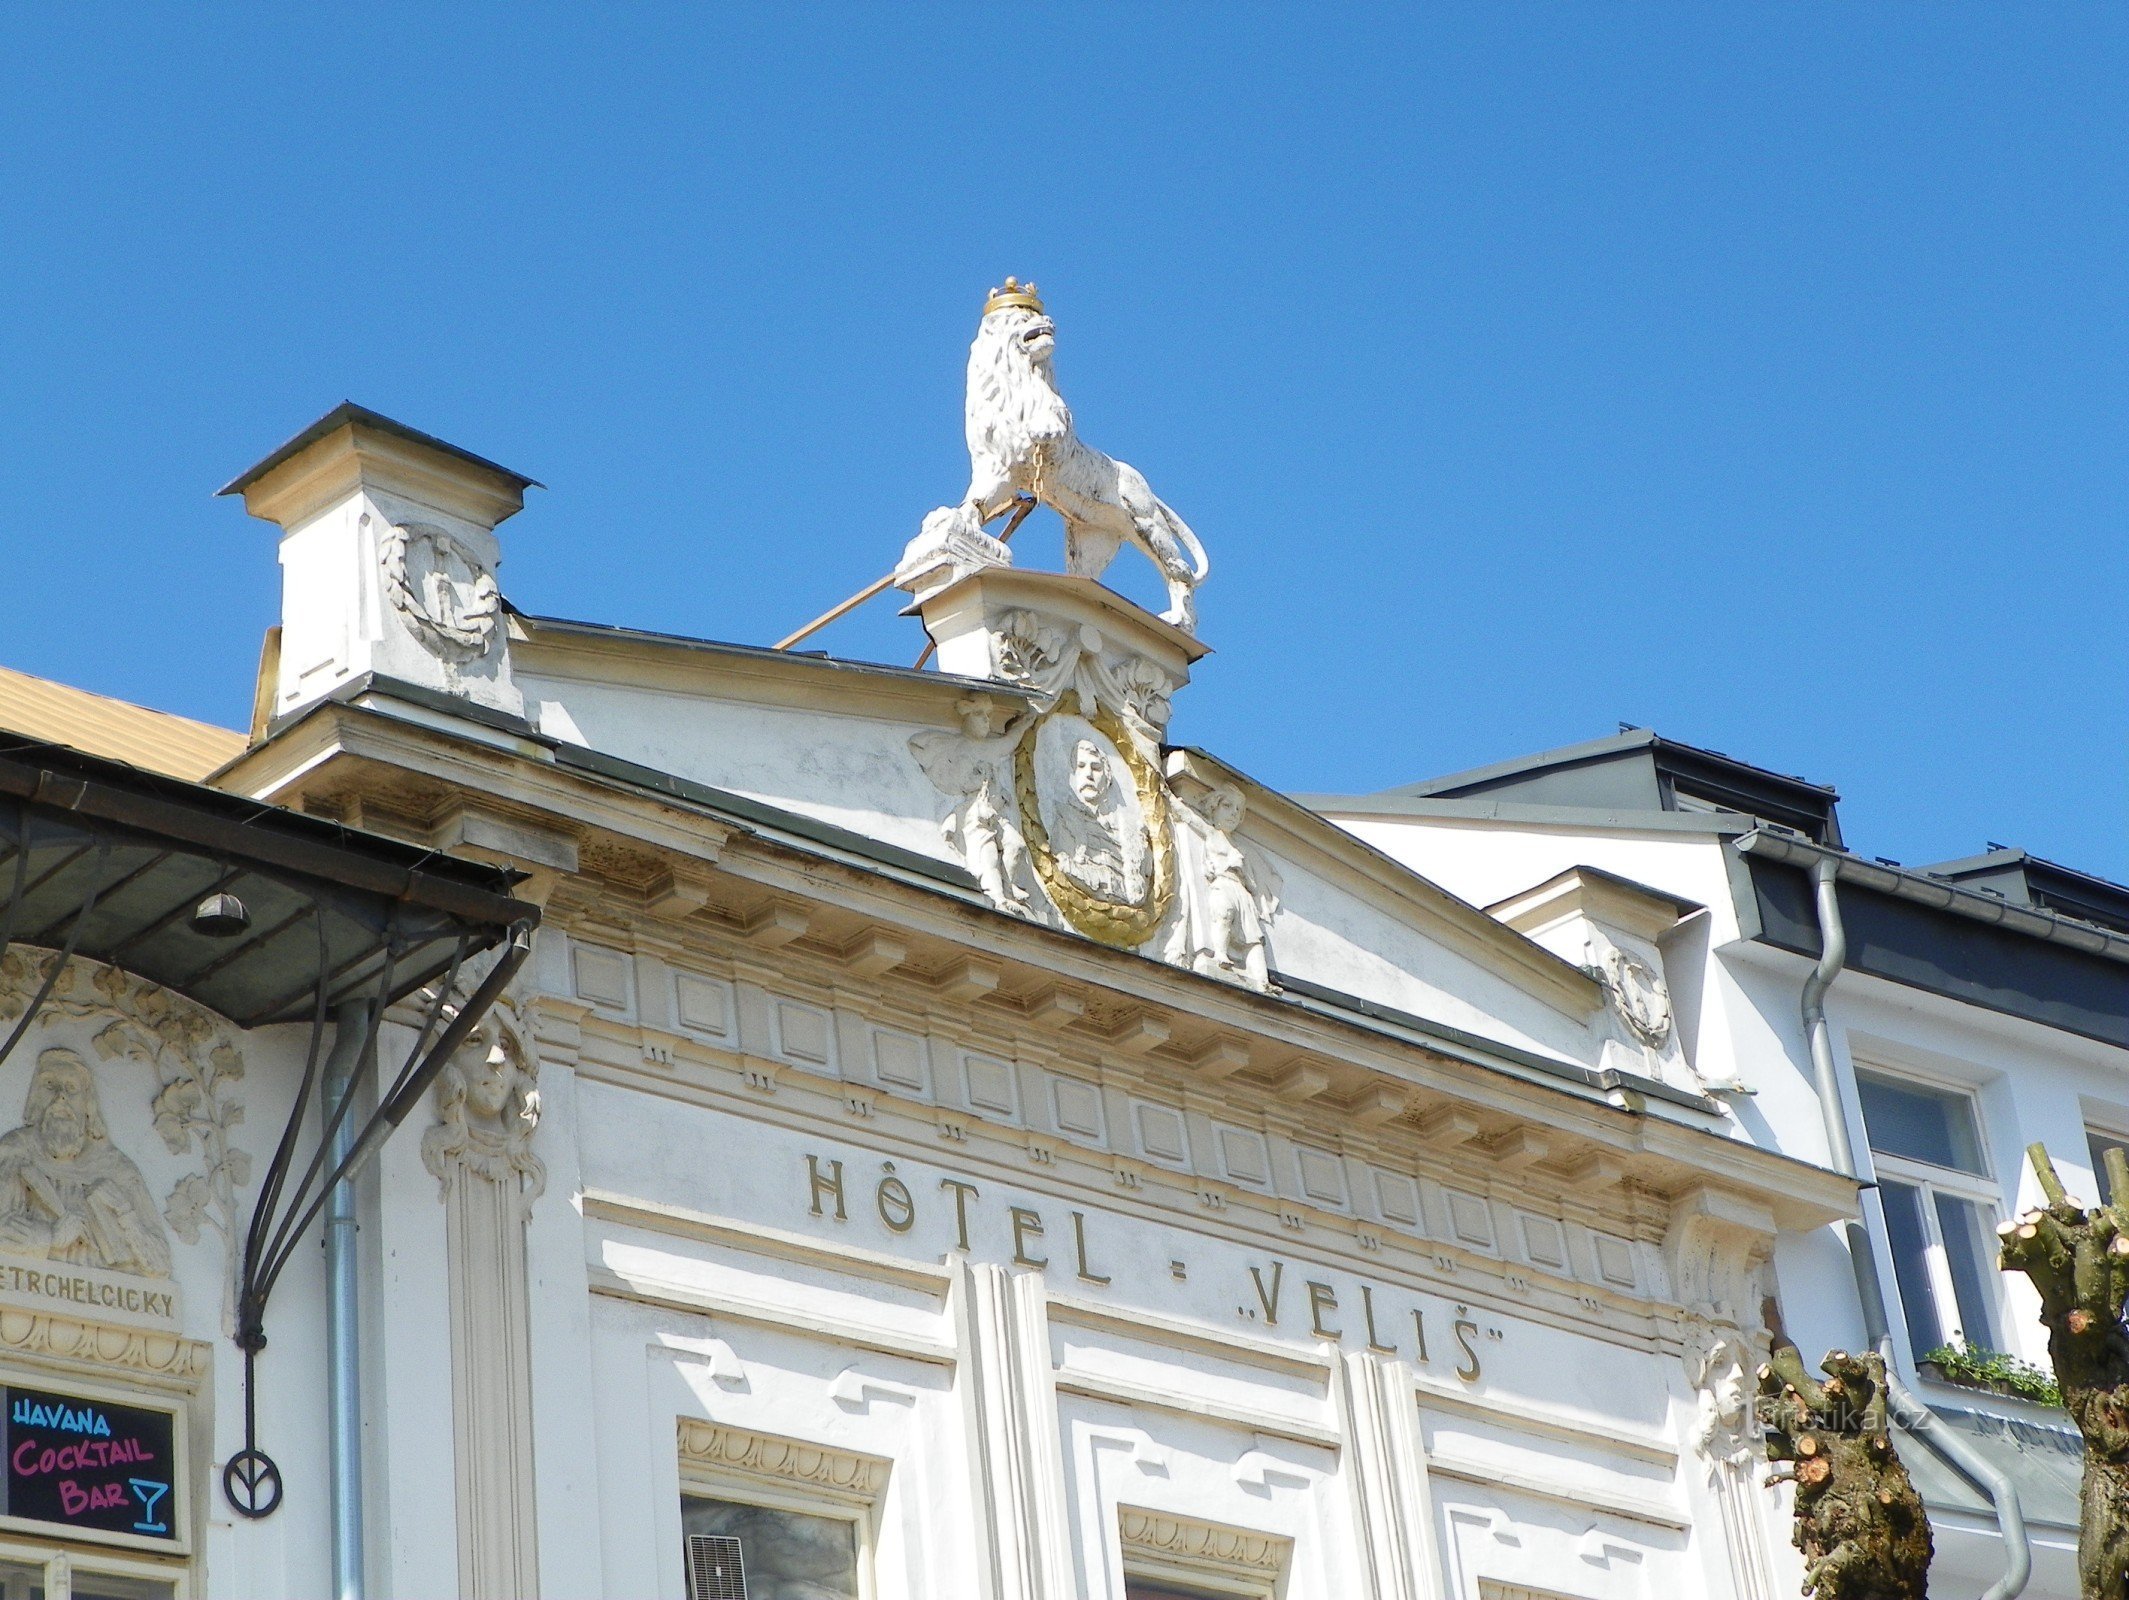 ホテル ヴェリシュの盾に描かれたチェコのライオンと KH ボロフスキー